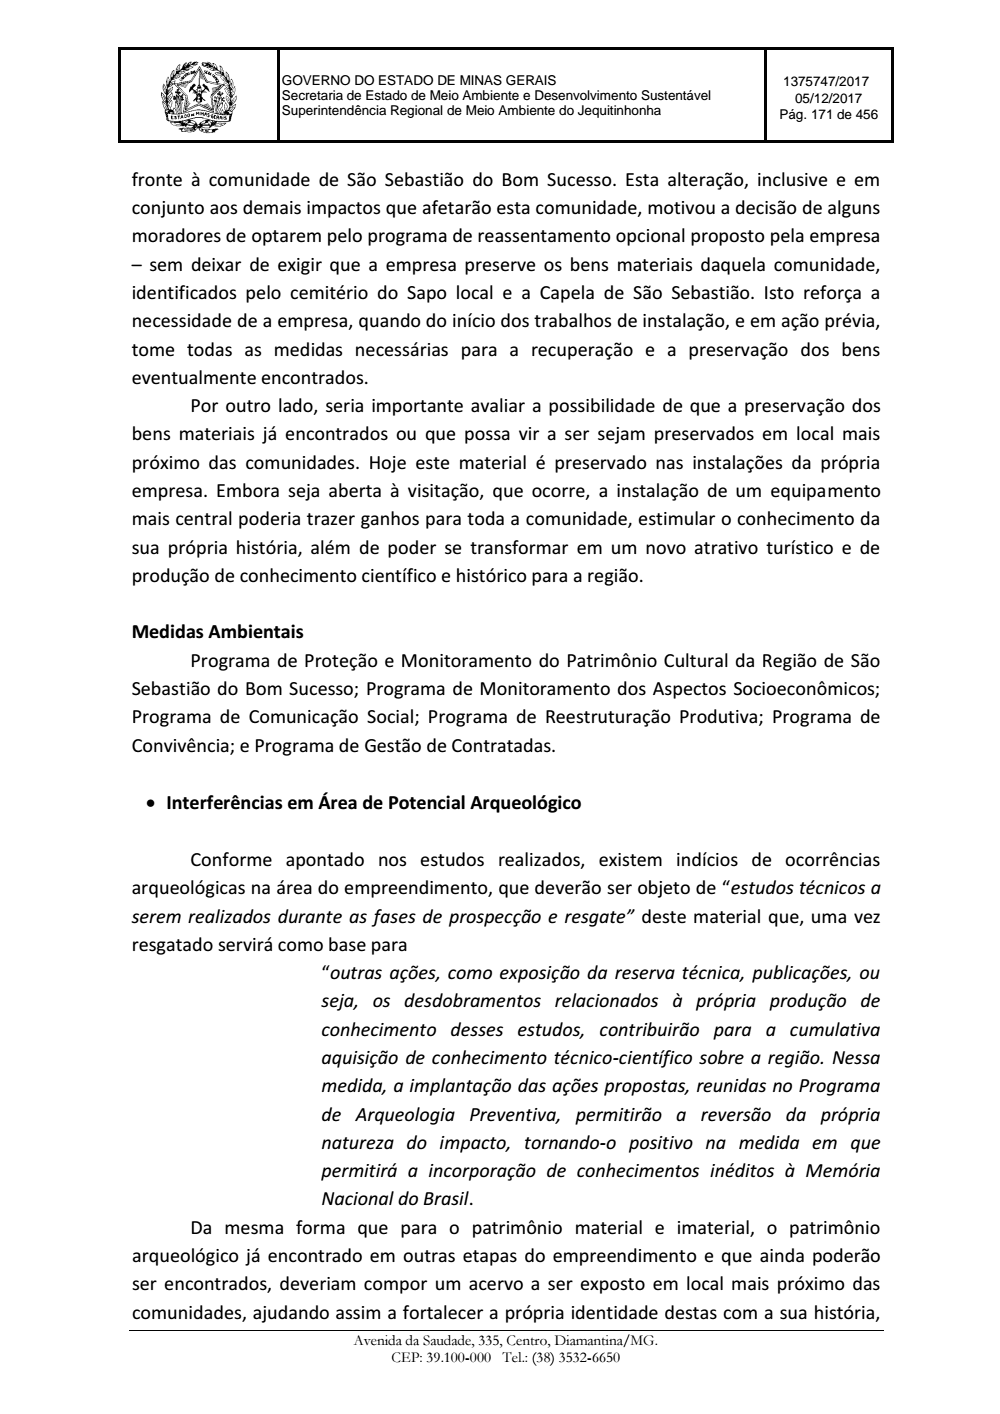 Page 171 from Parecer único da Secretaria de estado de Meio Ambiente e Desenvolvimento Sustentável (SEMAD)